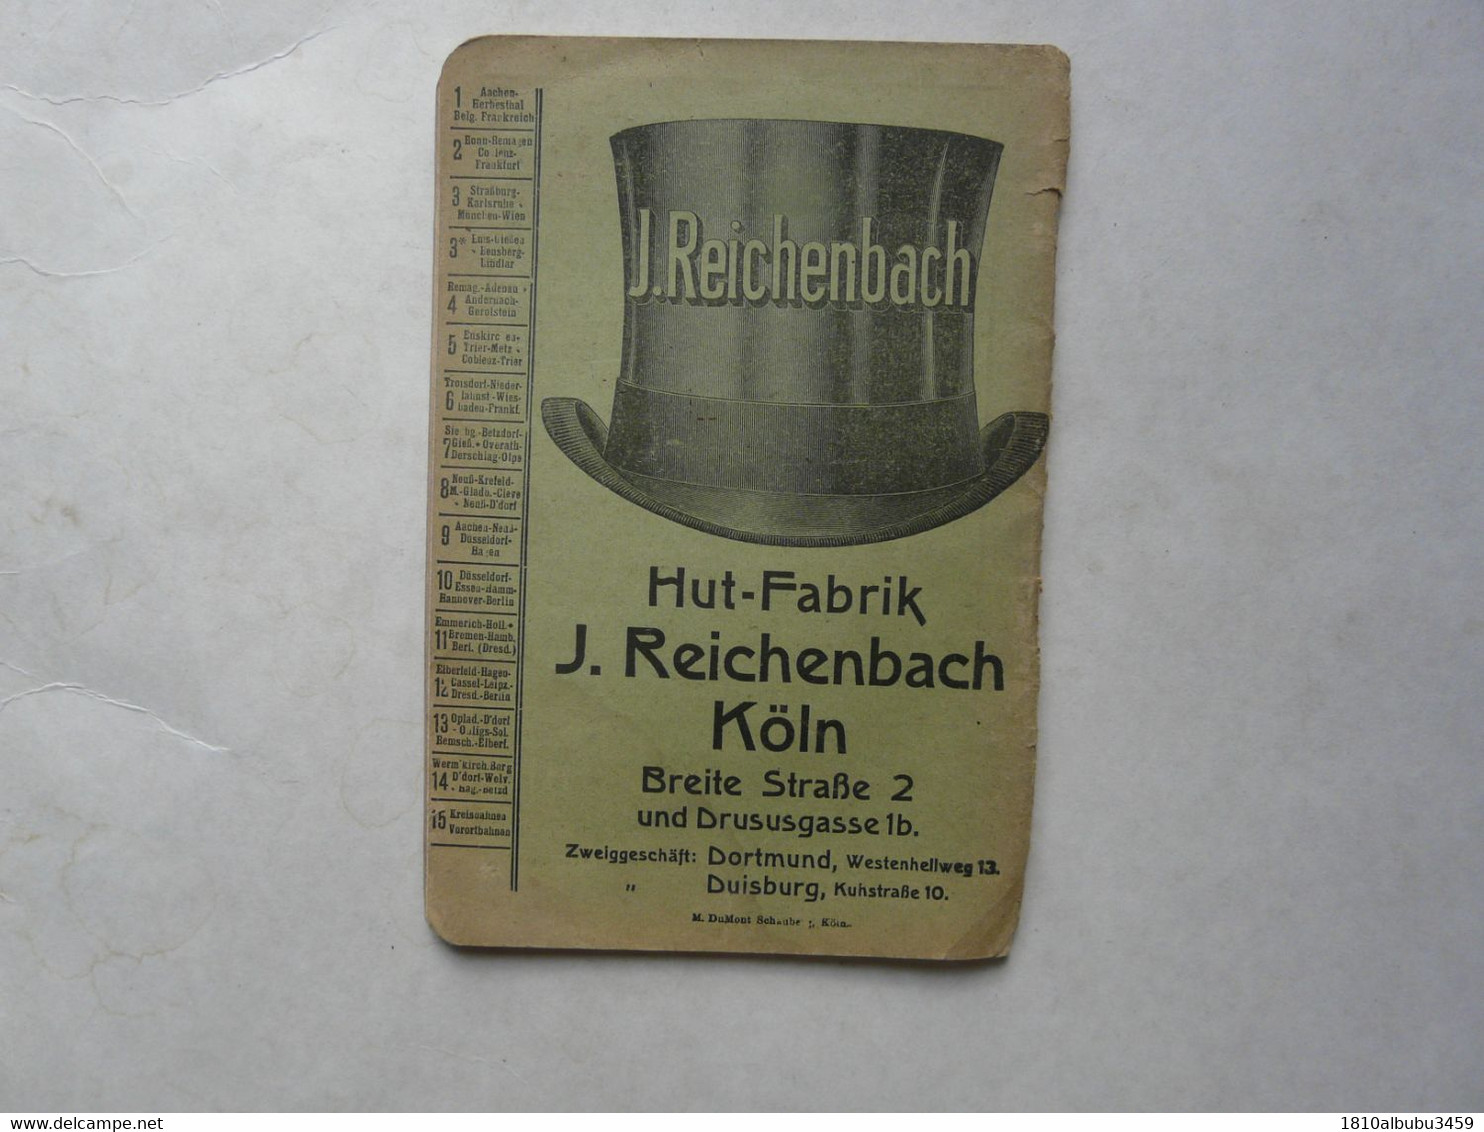 FAHRPLAN M. DUMONT SCHAUBERG 1920-1921 - Deutschland Gesamt